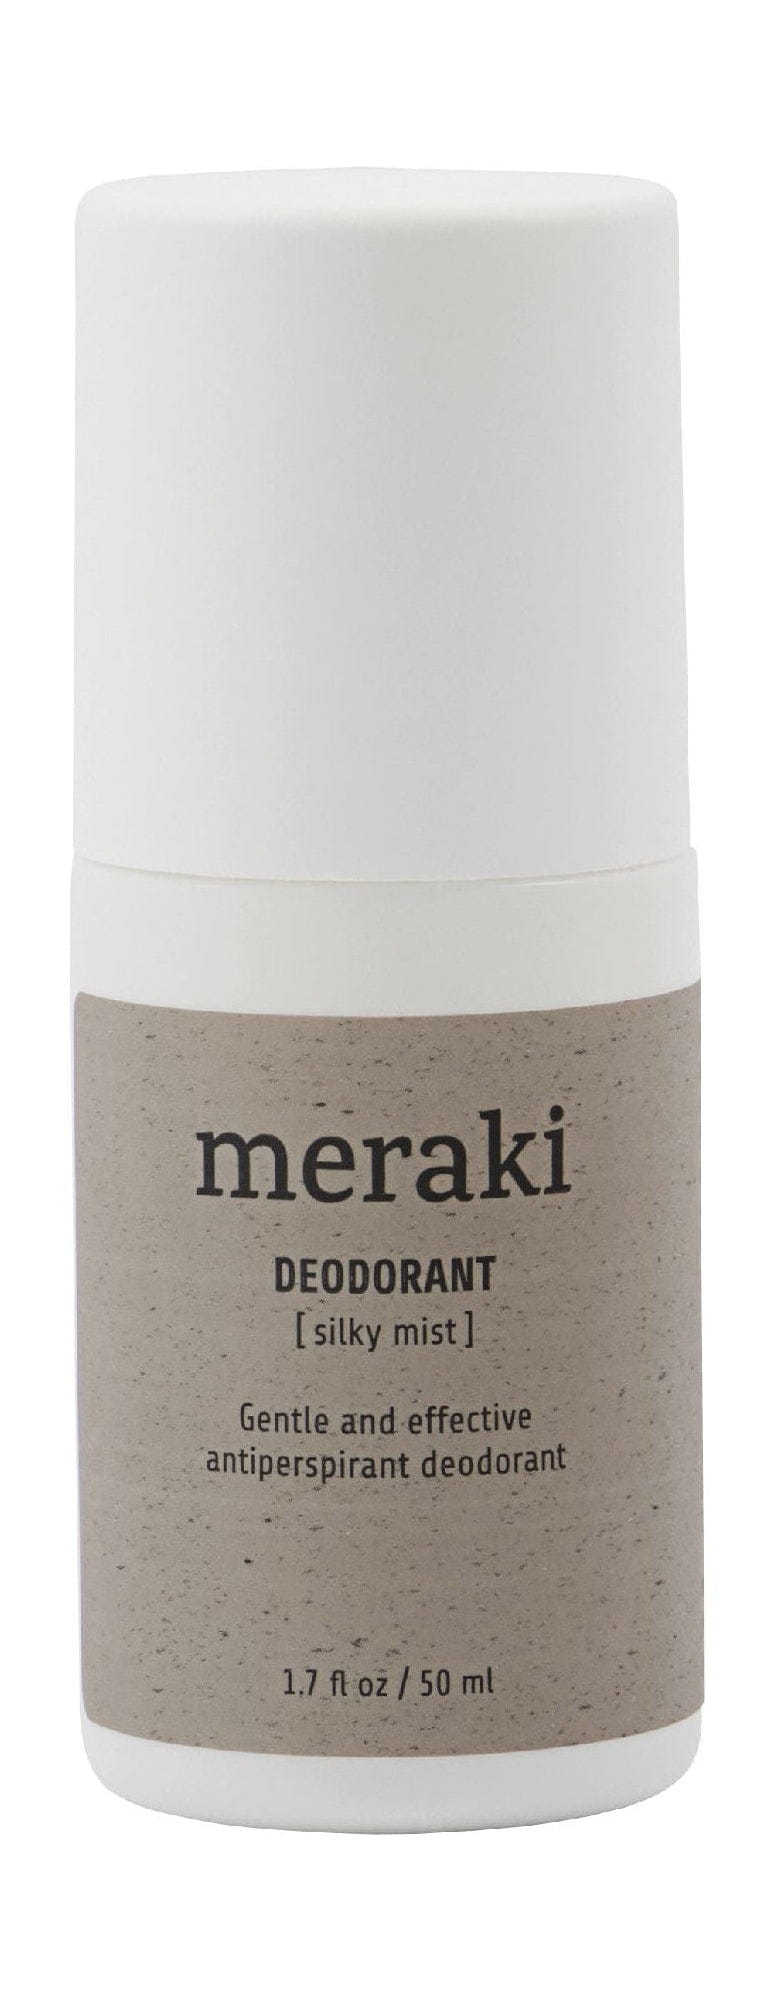 Desodorante Meraki 50 ml, niebla sedosa